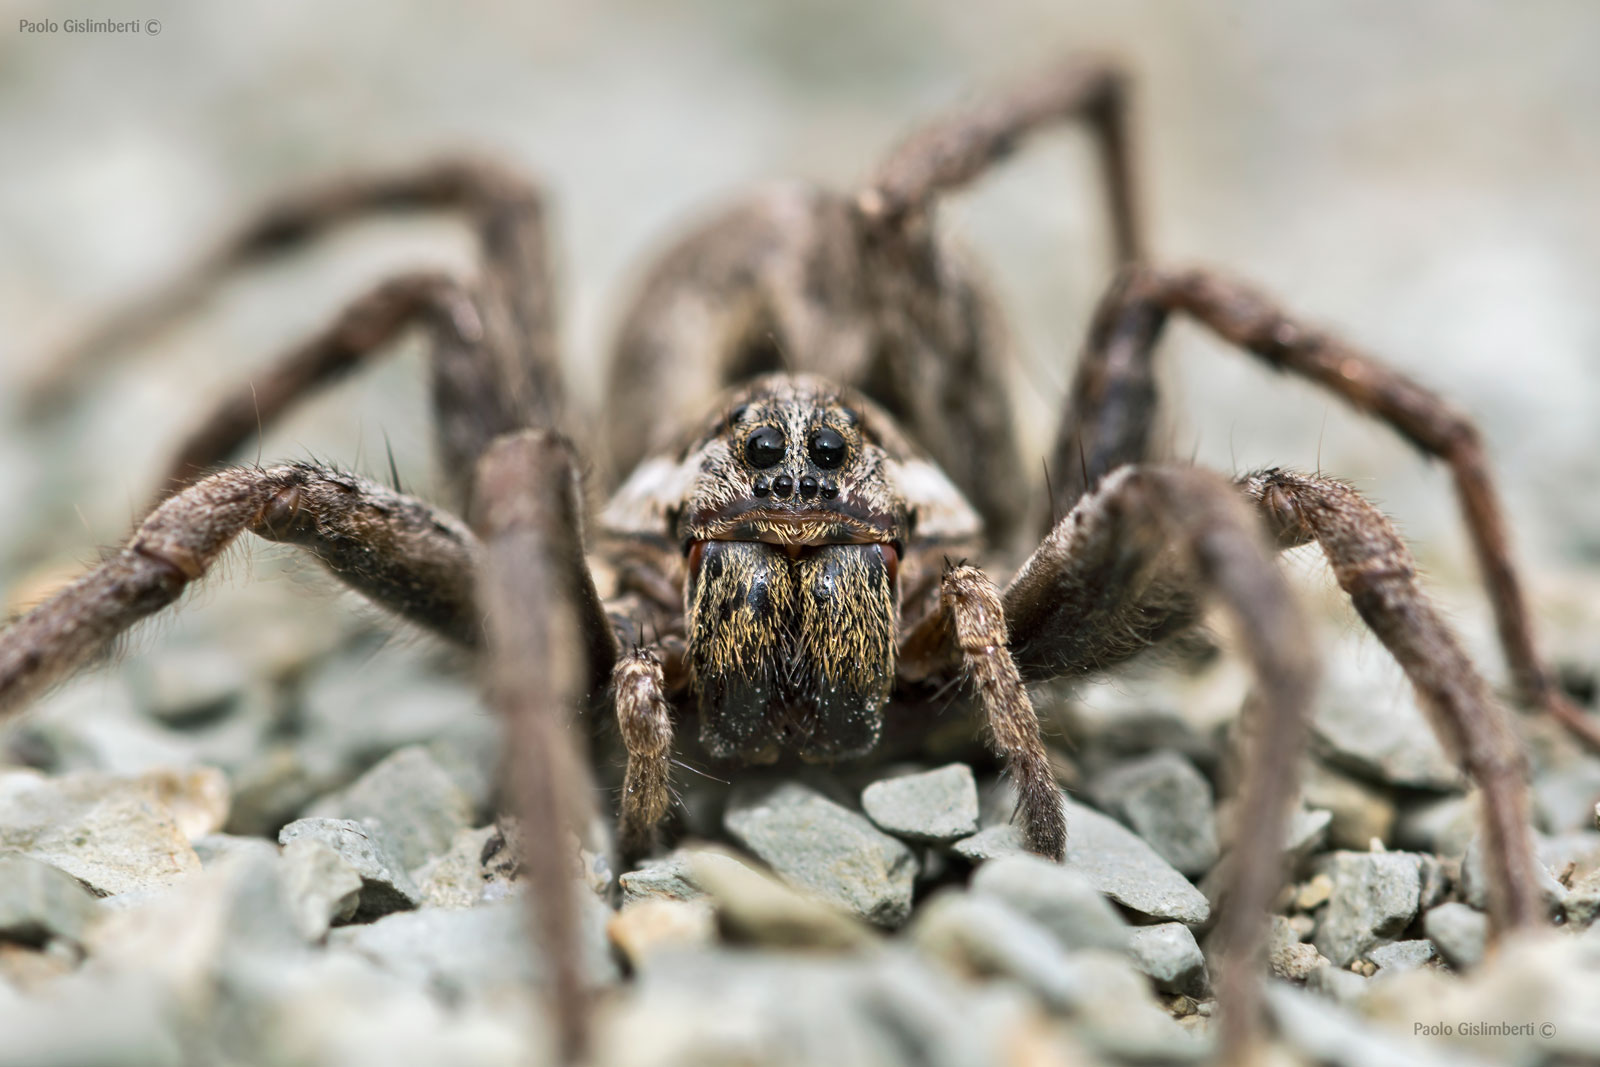 Hogna radiata, European Wolf Spider